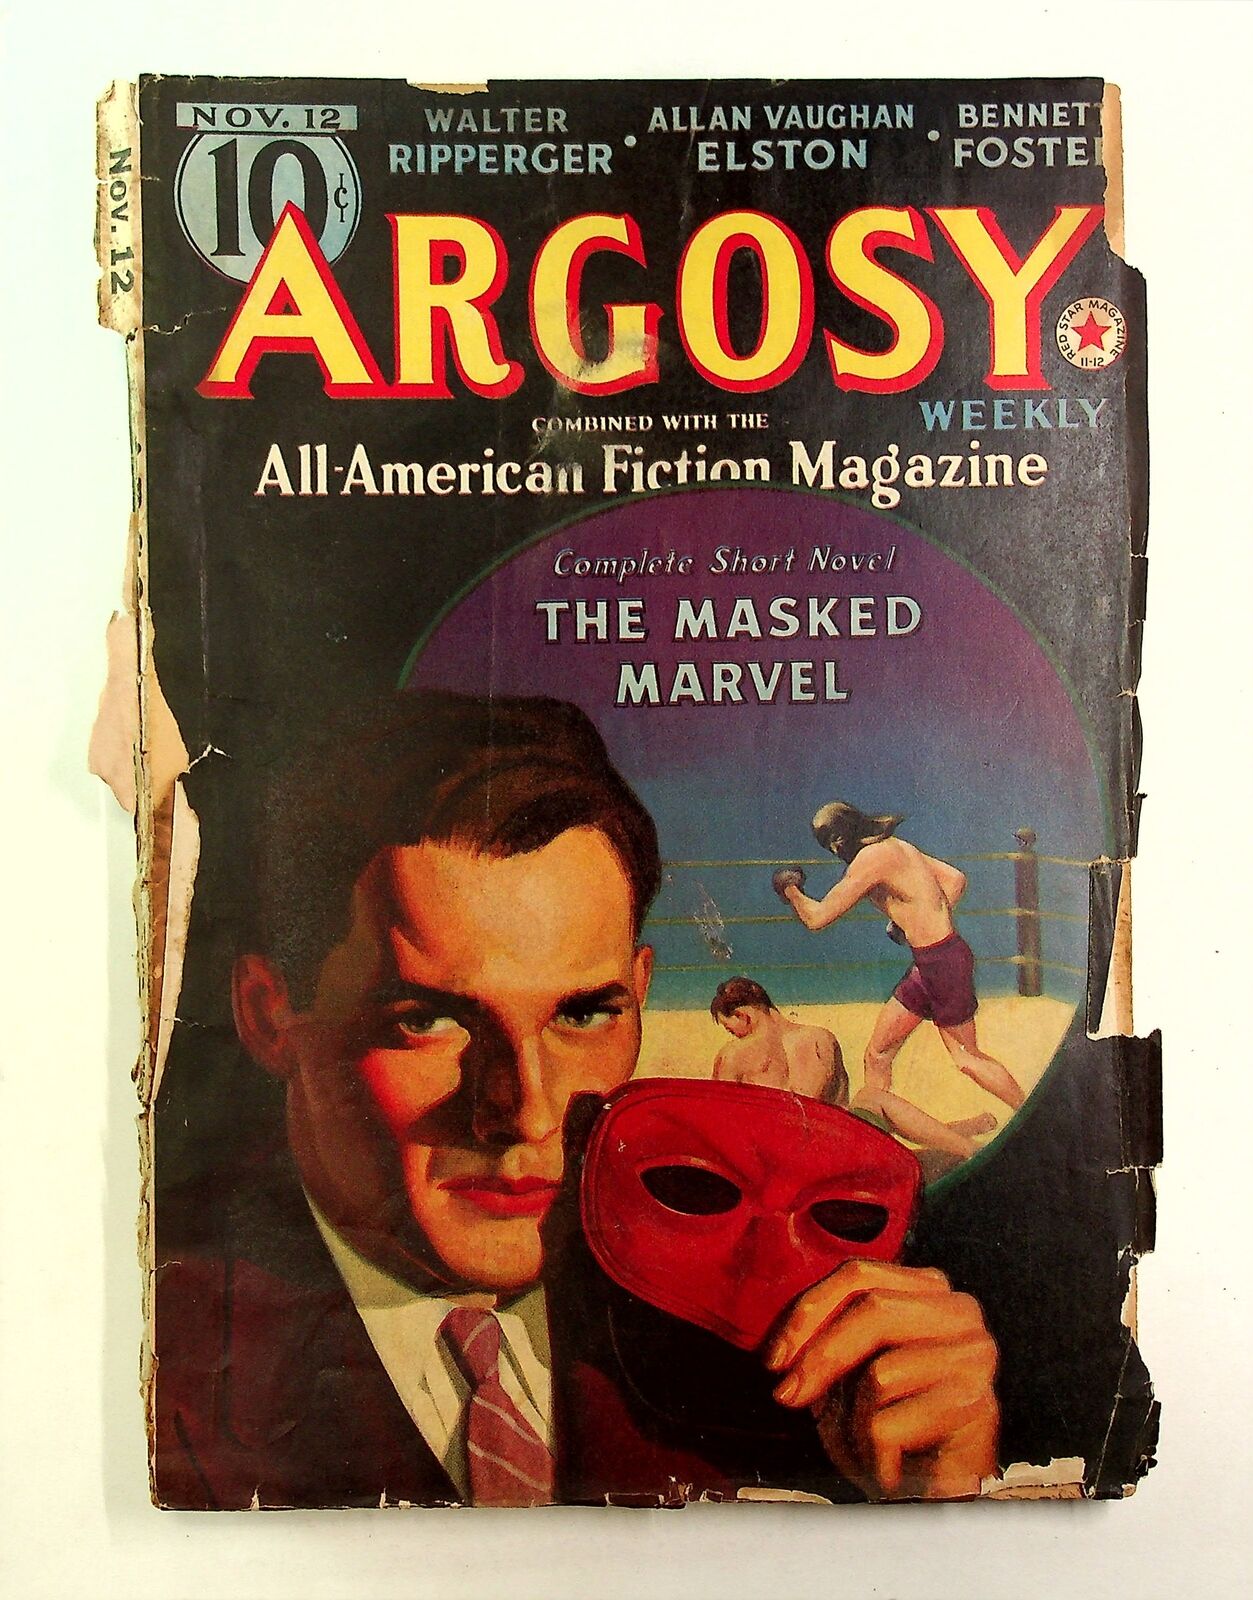 Argosy Part 4: Argosy Weekly Nov 12 1938 Vol. 286 #1 FR Low Grade